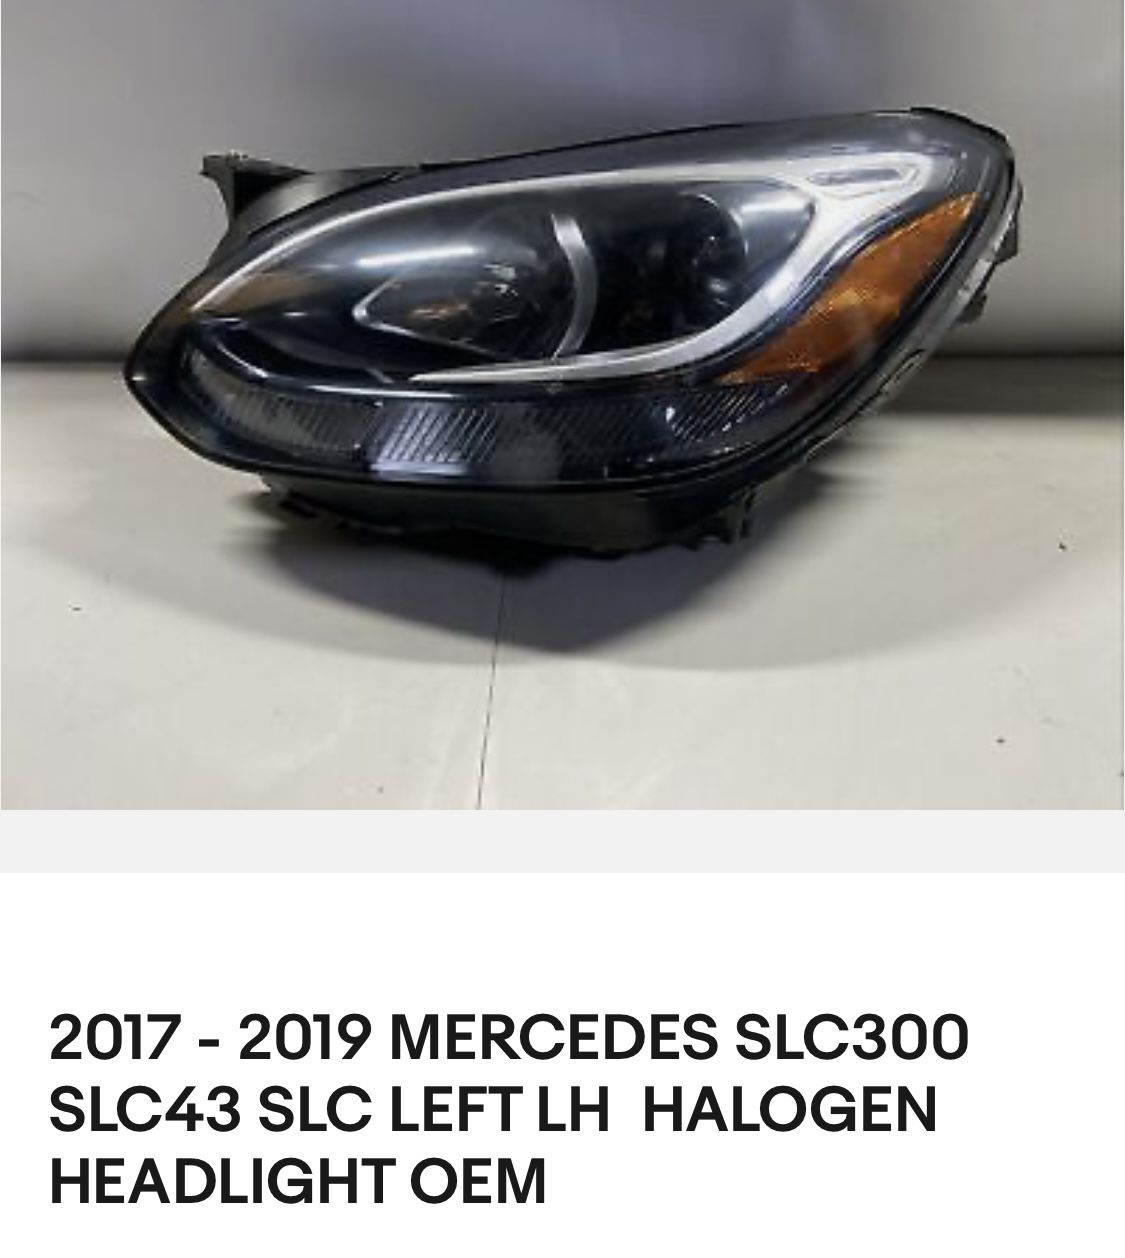 Used Mercedes Headlights 